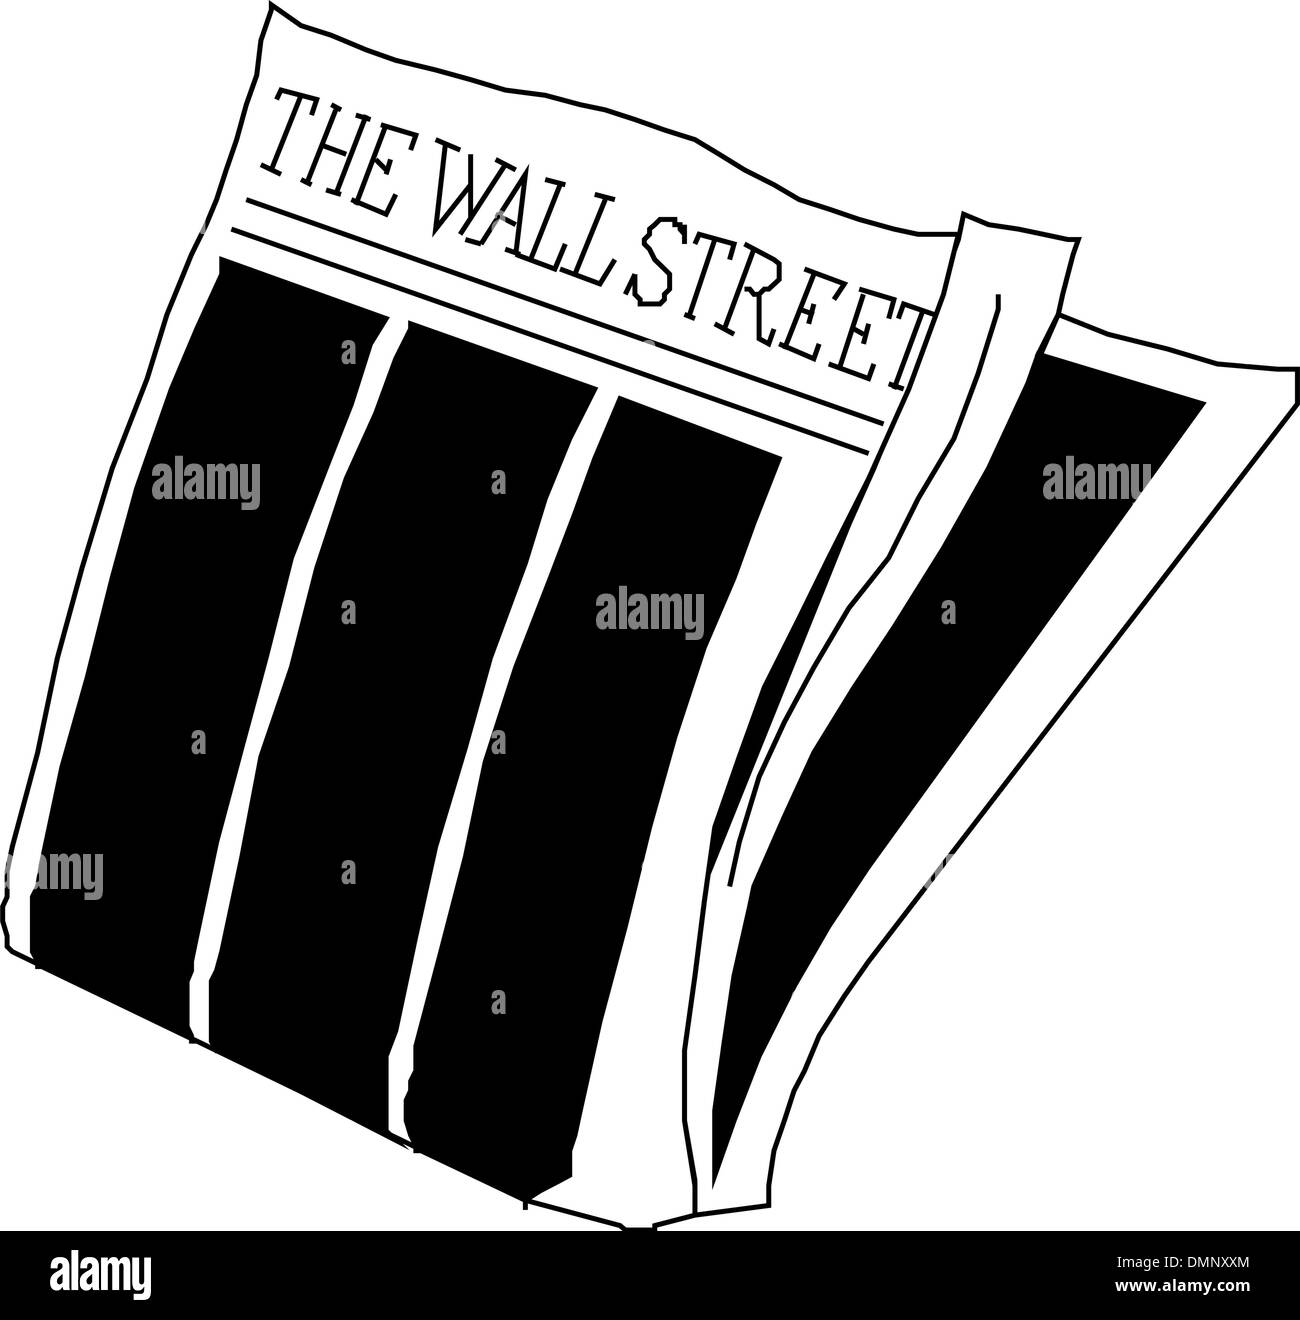 Zeitung Wallstreet Stock Vektor